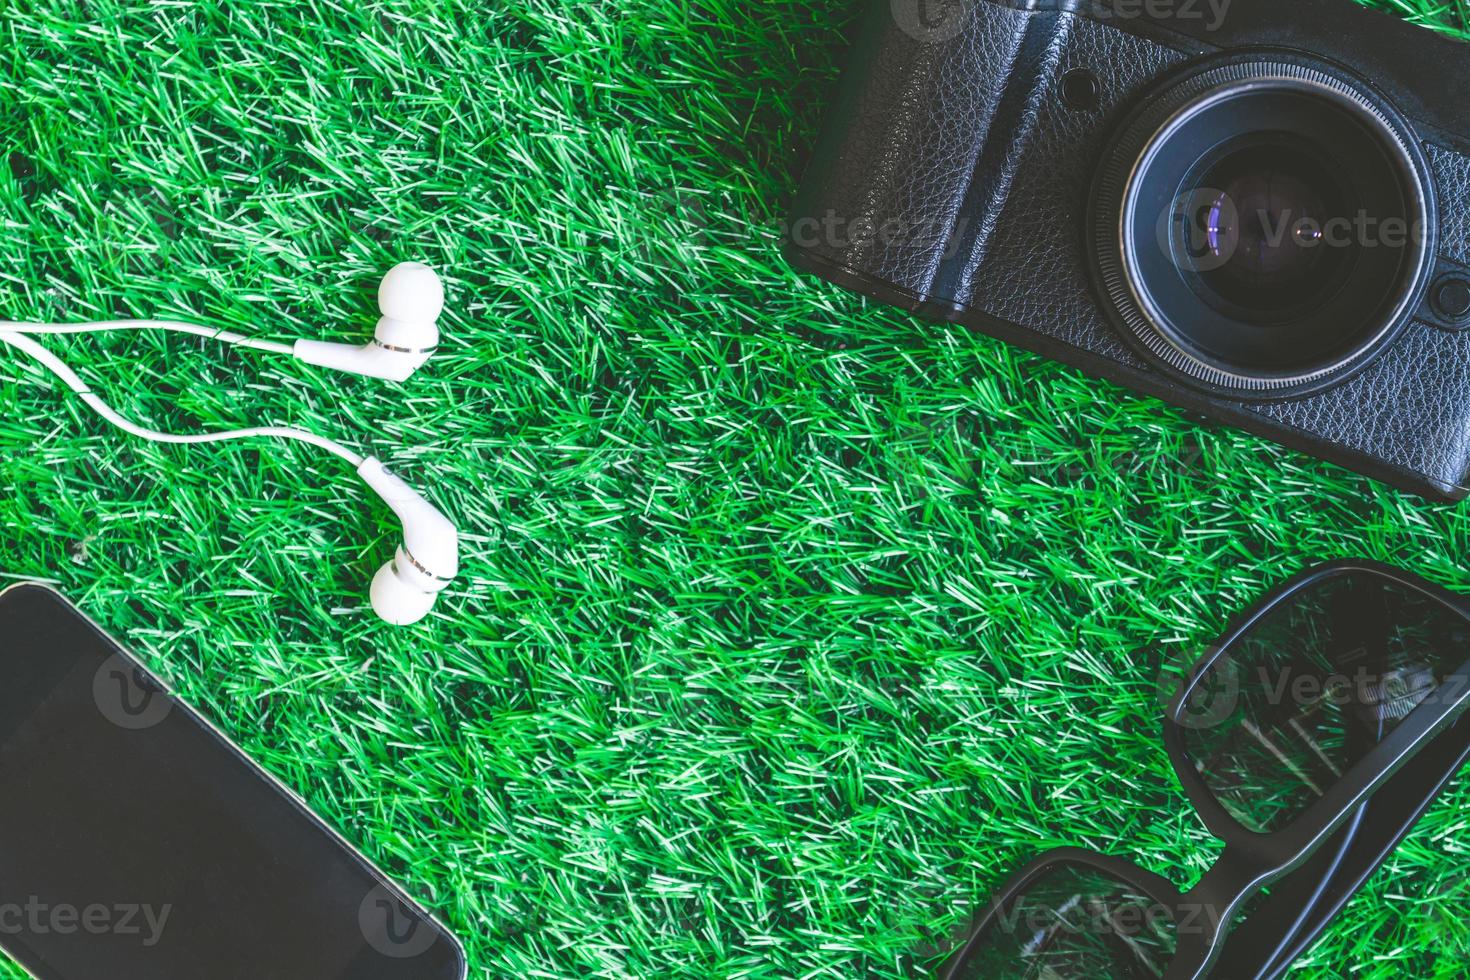 appareil photo avec lunettes de soleil, téléphone intelligent et écouteurs sur fond d'herbe verte.